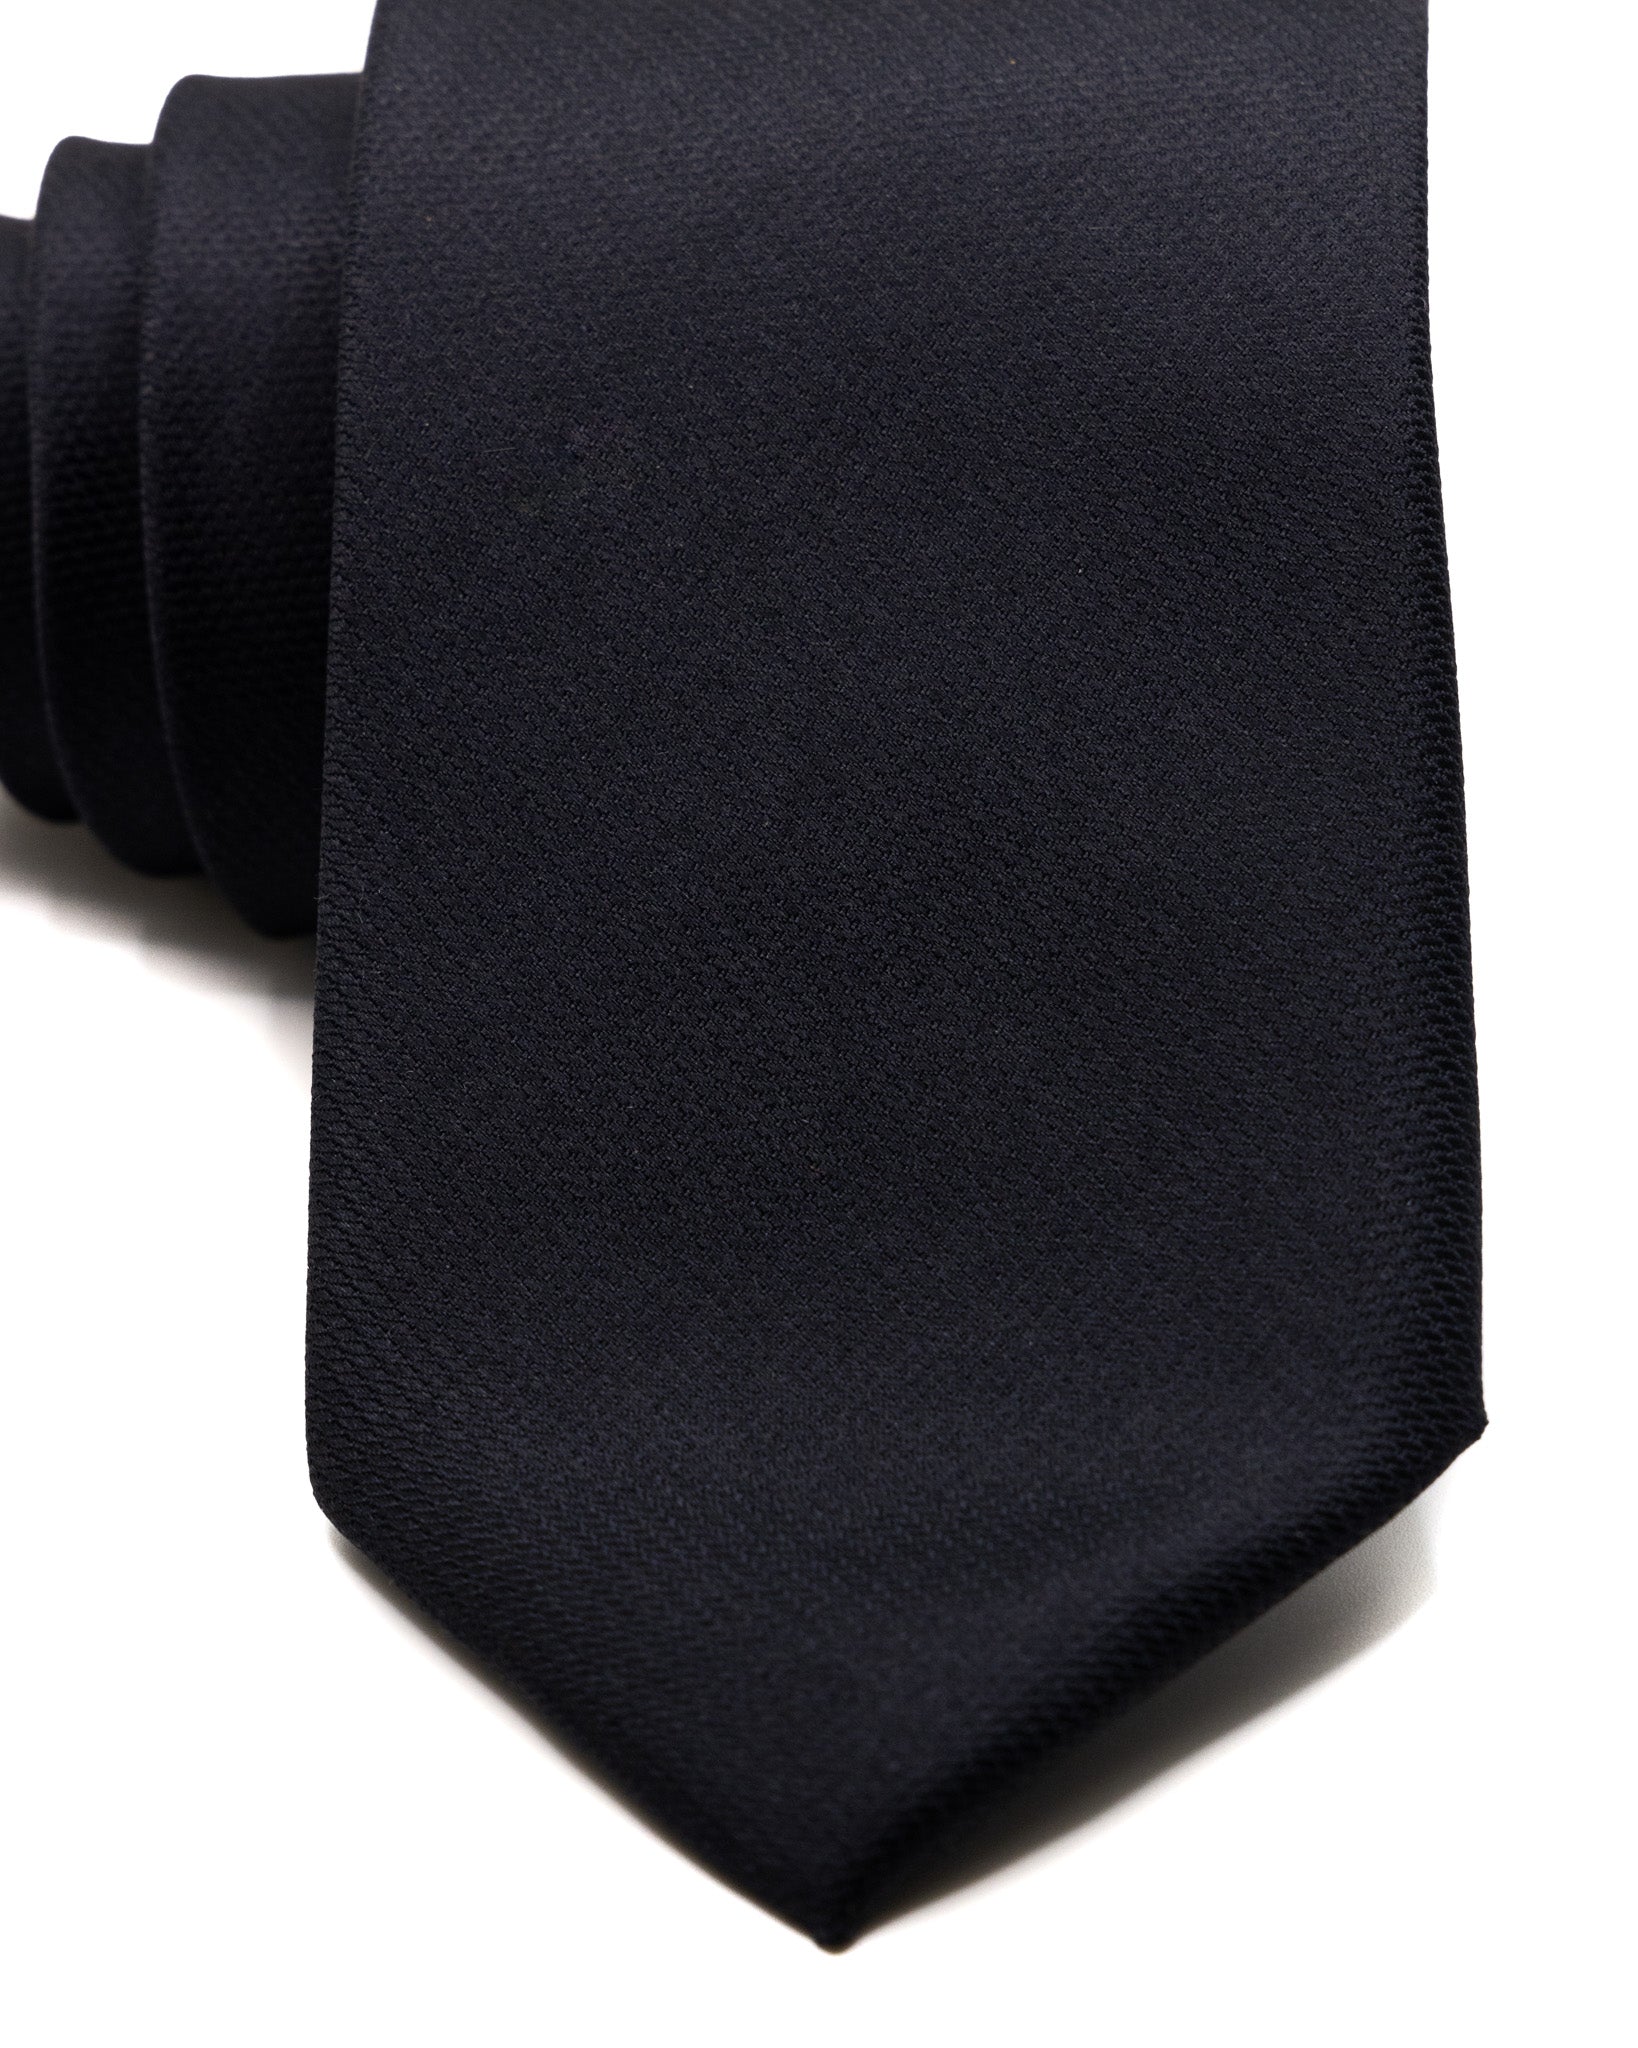 Cravatta - in seta armaturata nera